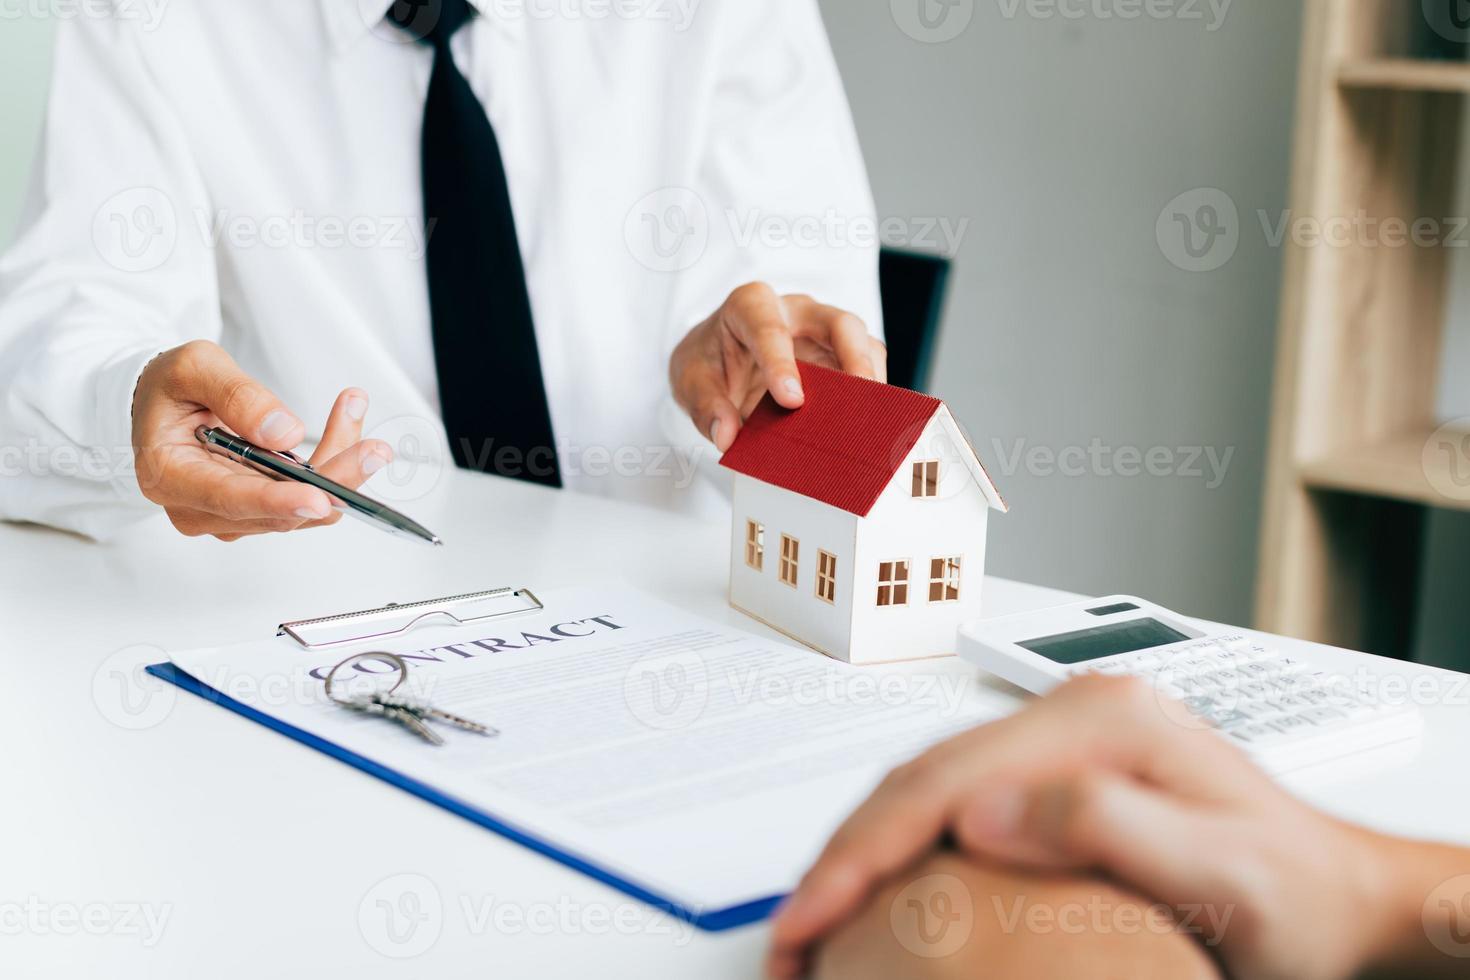 los agentes inmobiliarios envían bolígrafos a los clientes que firman un contrato para comprar una casa nueva. foto